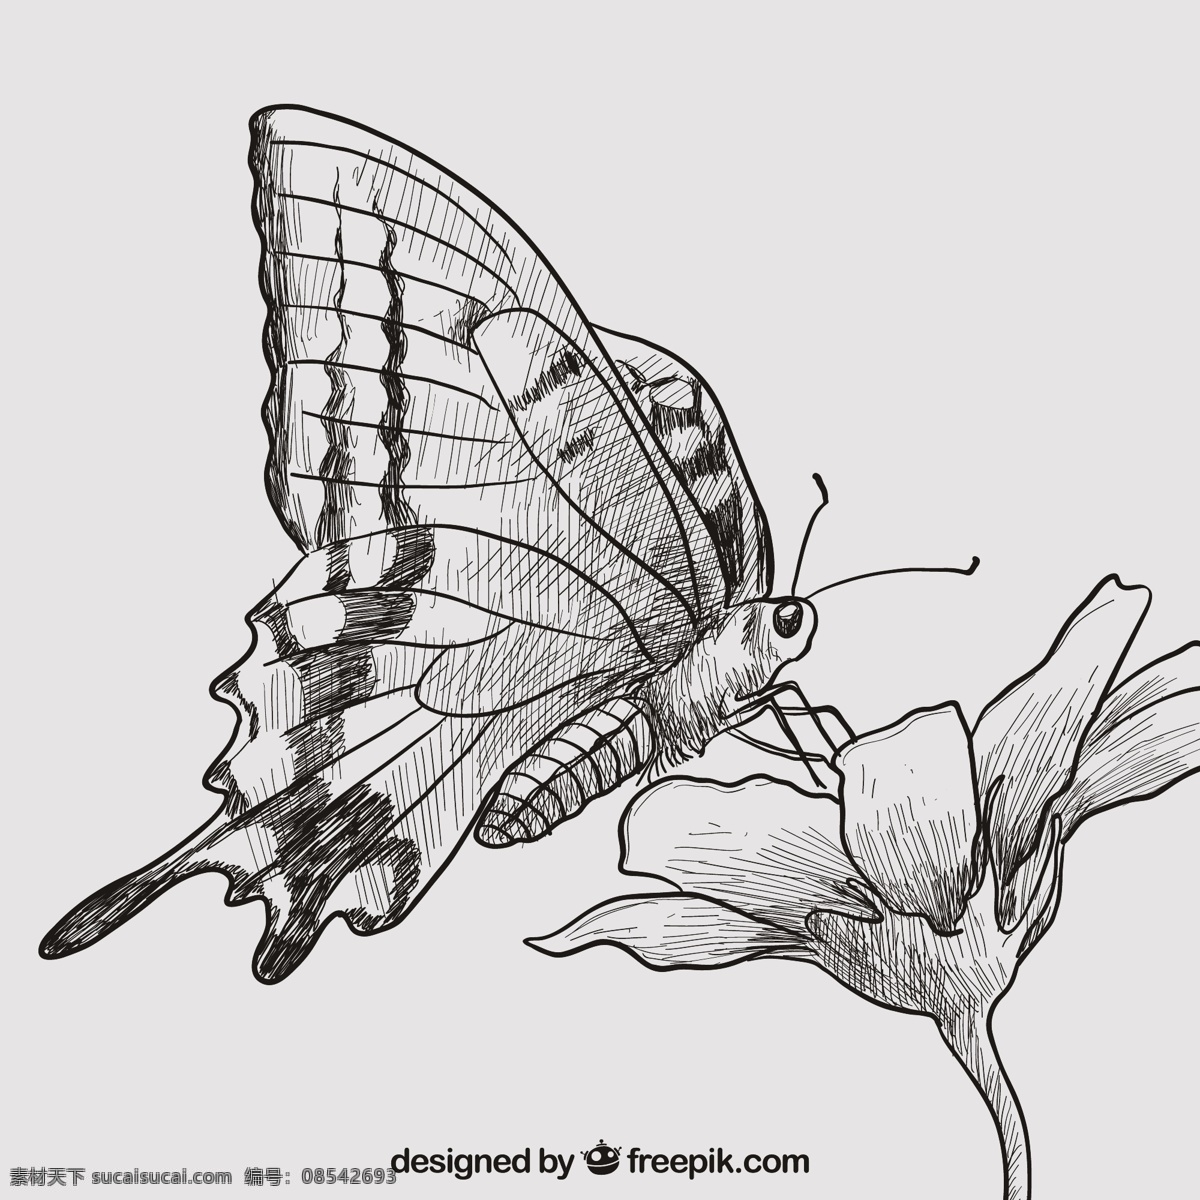 手绘 蝴蝶 鲜花 自然 动物 绘制 翅膀 绘画 手工 昆虫 抽纱 飞行 图标 高清 源文件